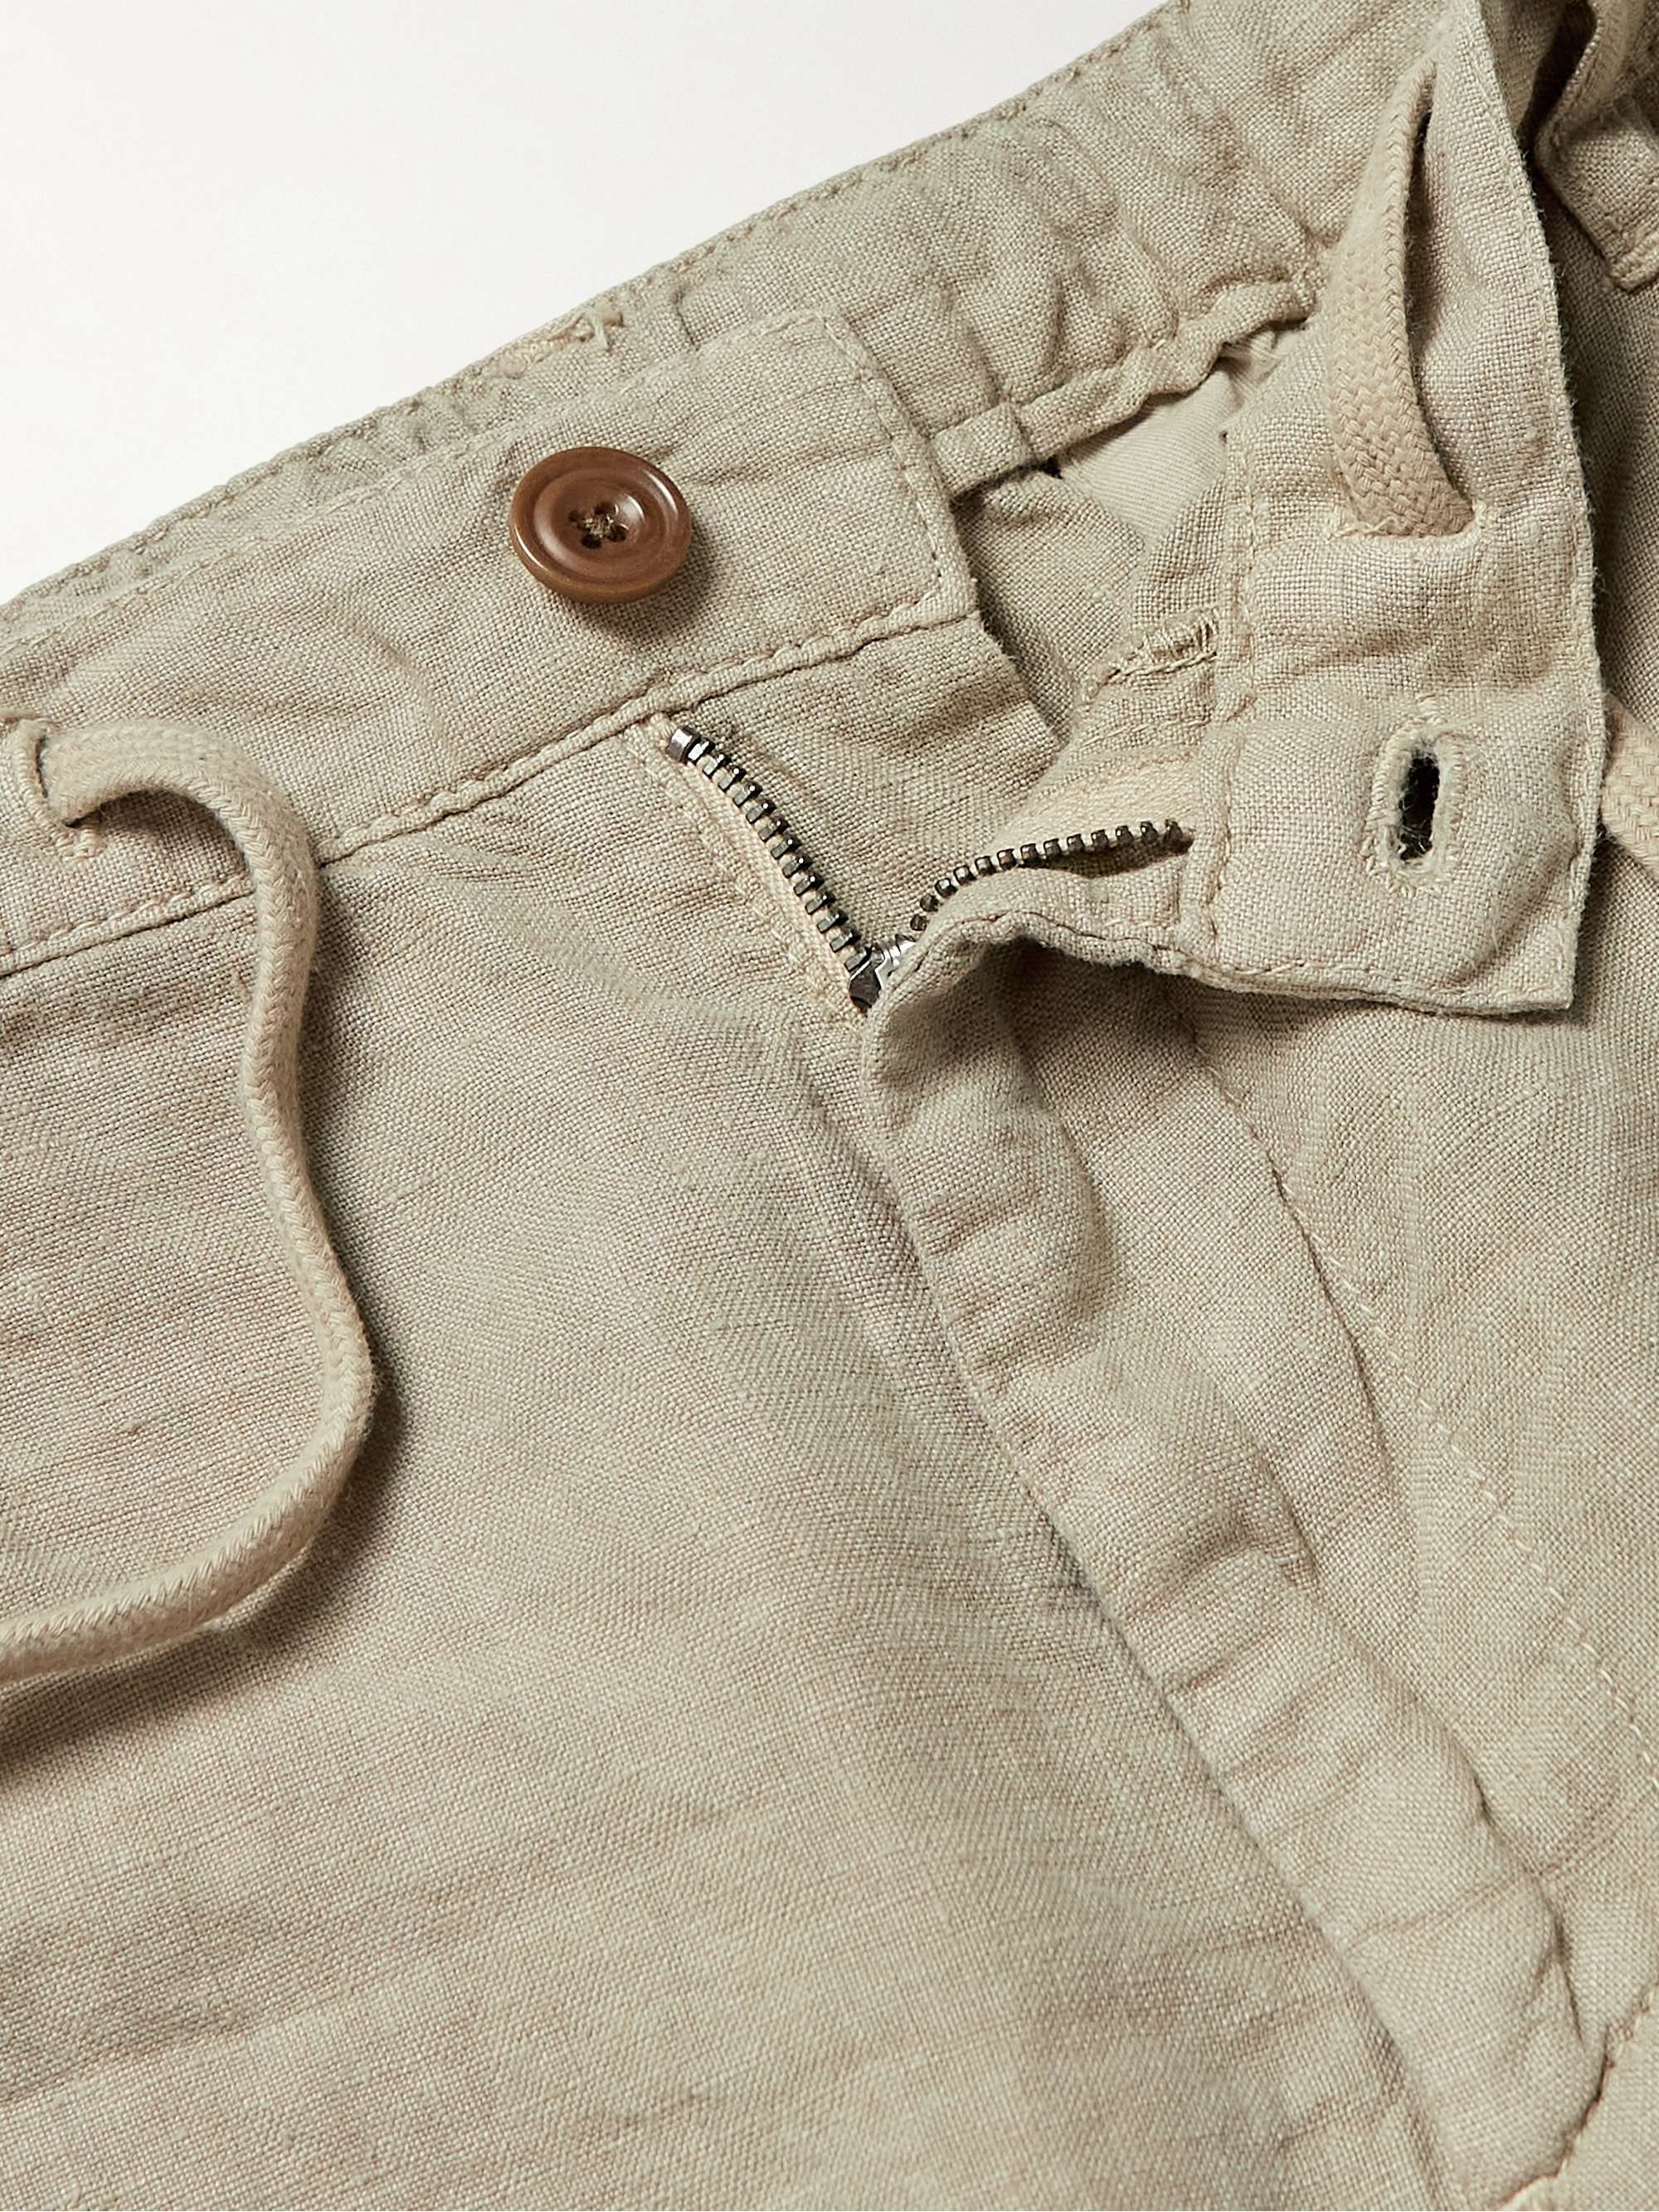 HARTFORD Tank Slim-Fit Linen Drawstring Shorts